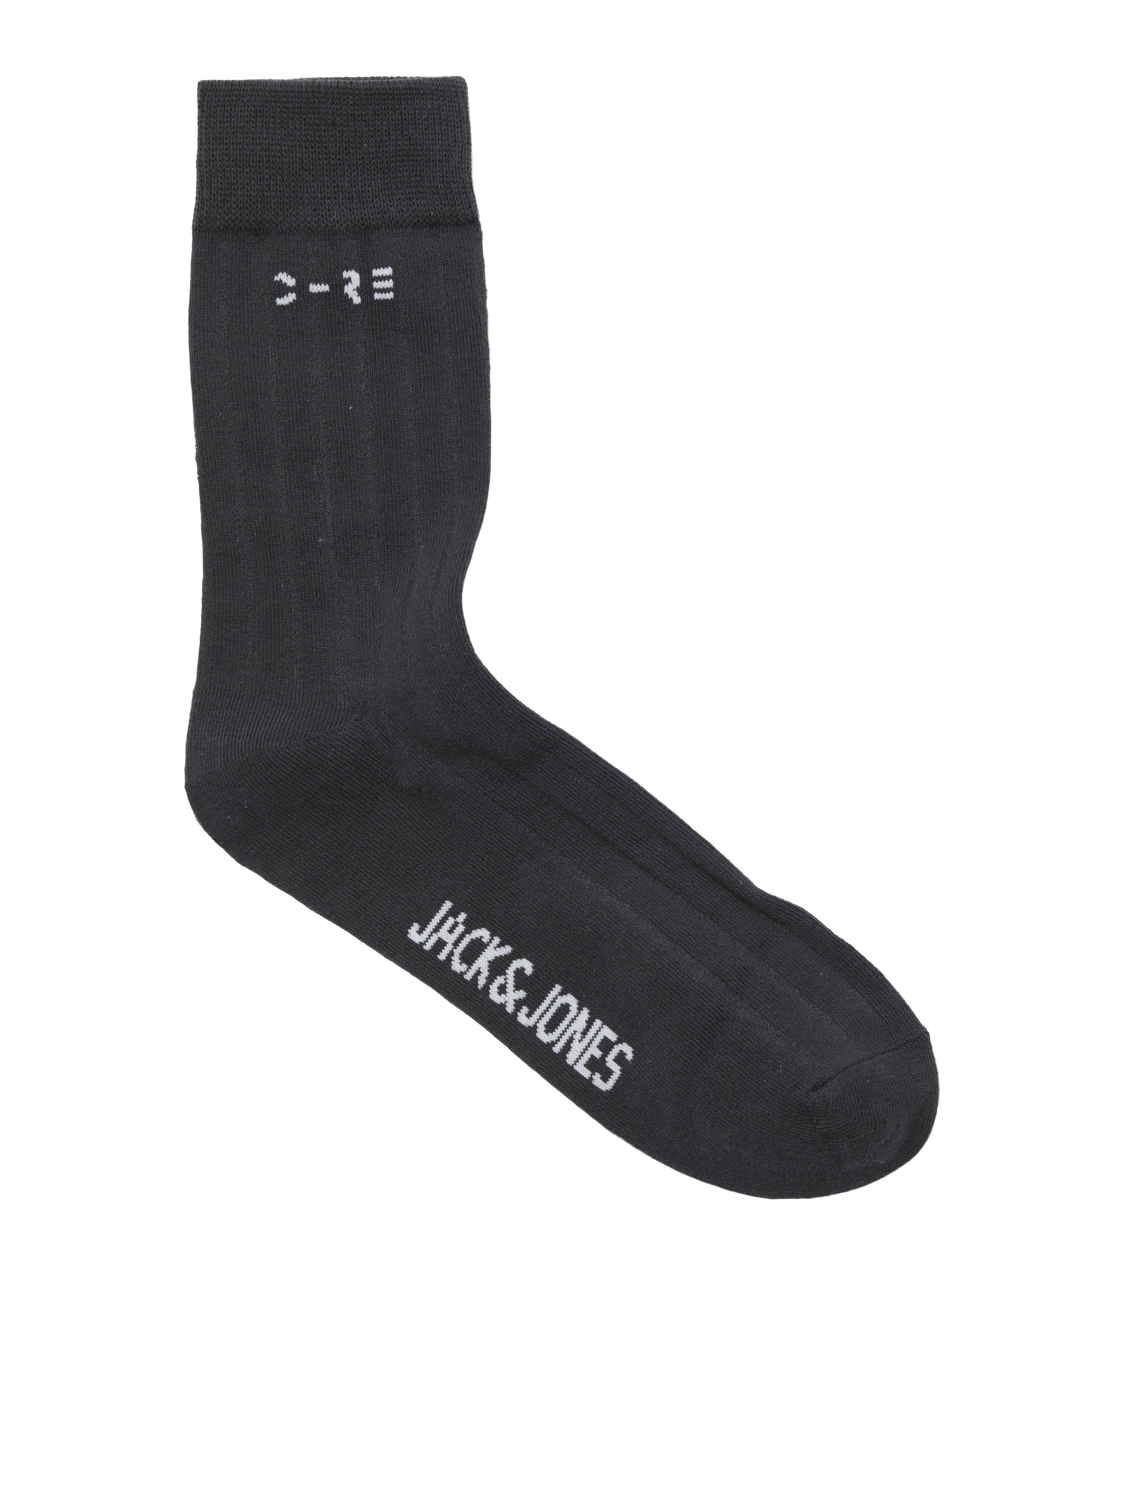 Jack & Jones 3er-pack Socken -Marshmallow - 12264016